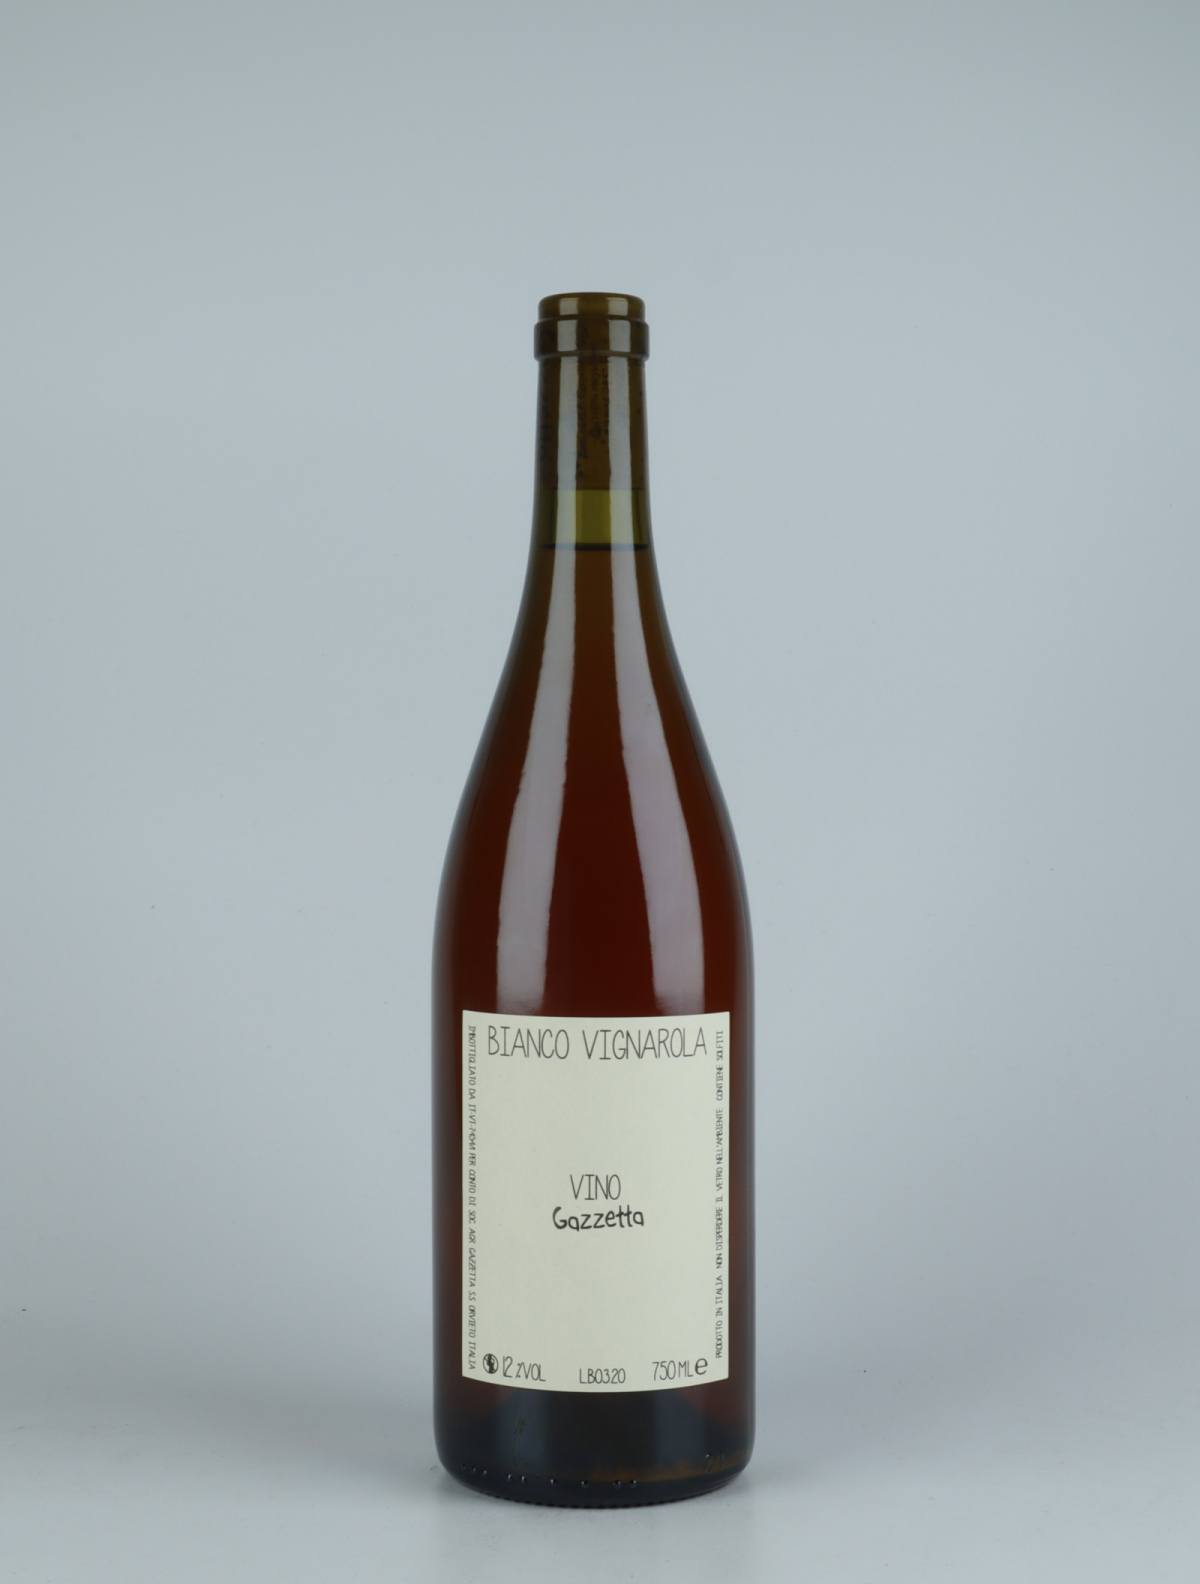 A bottle 2020 Vino Bianco Vignarola Orange wine from Gazzetta, Lazio in Italy